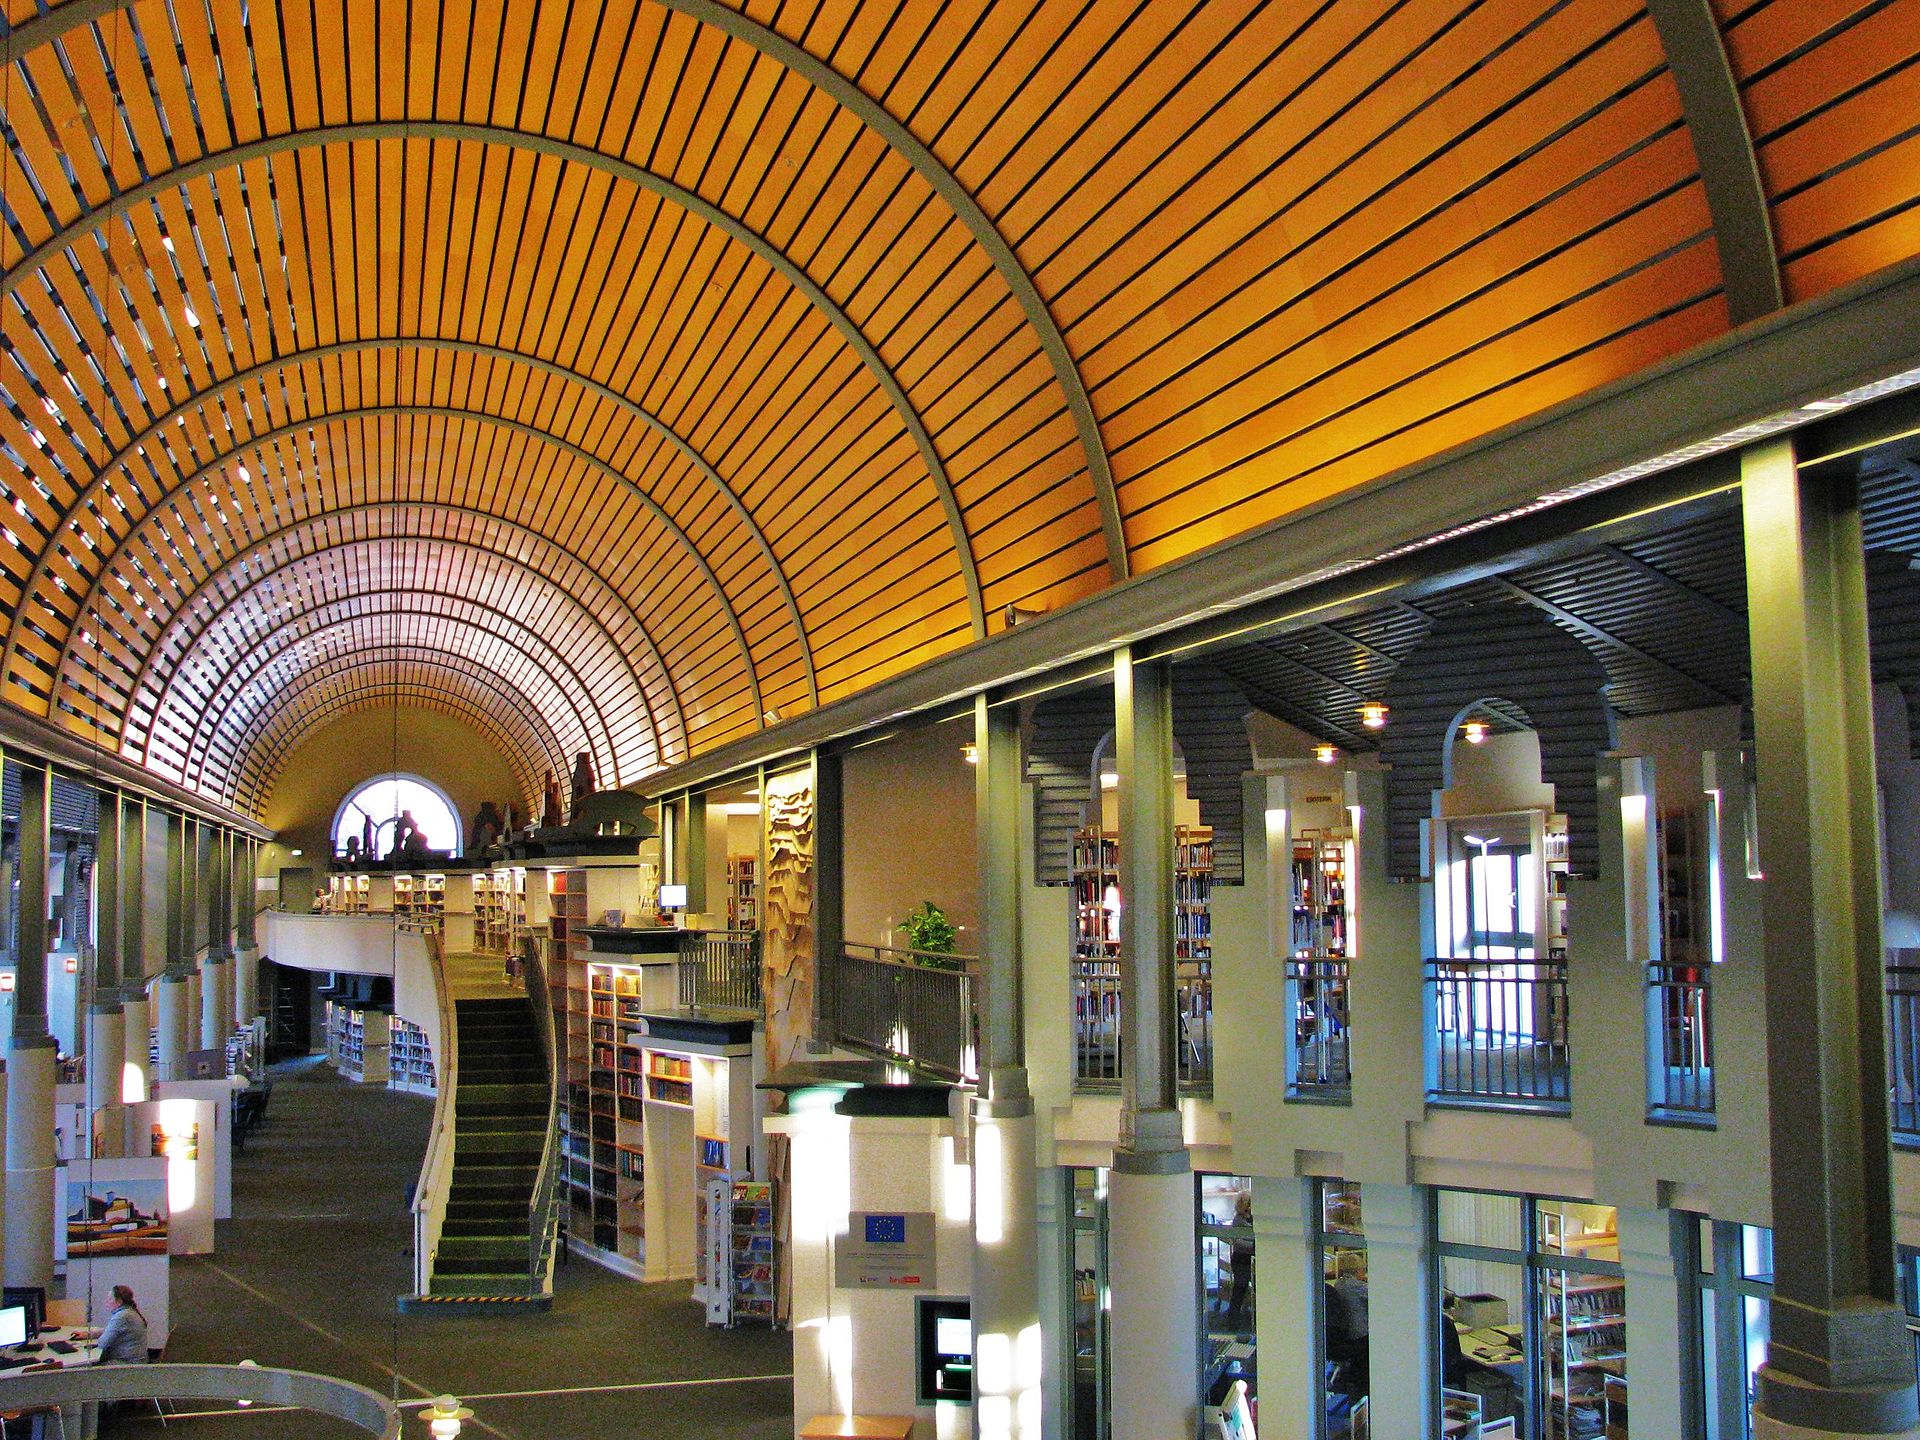 Die Humboldt Bibliothek ist ein architektonisches Kleinod im Norden Berlins. Foto: Barnos / wikimedia commons / CC BY-SA 4.0